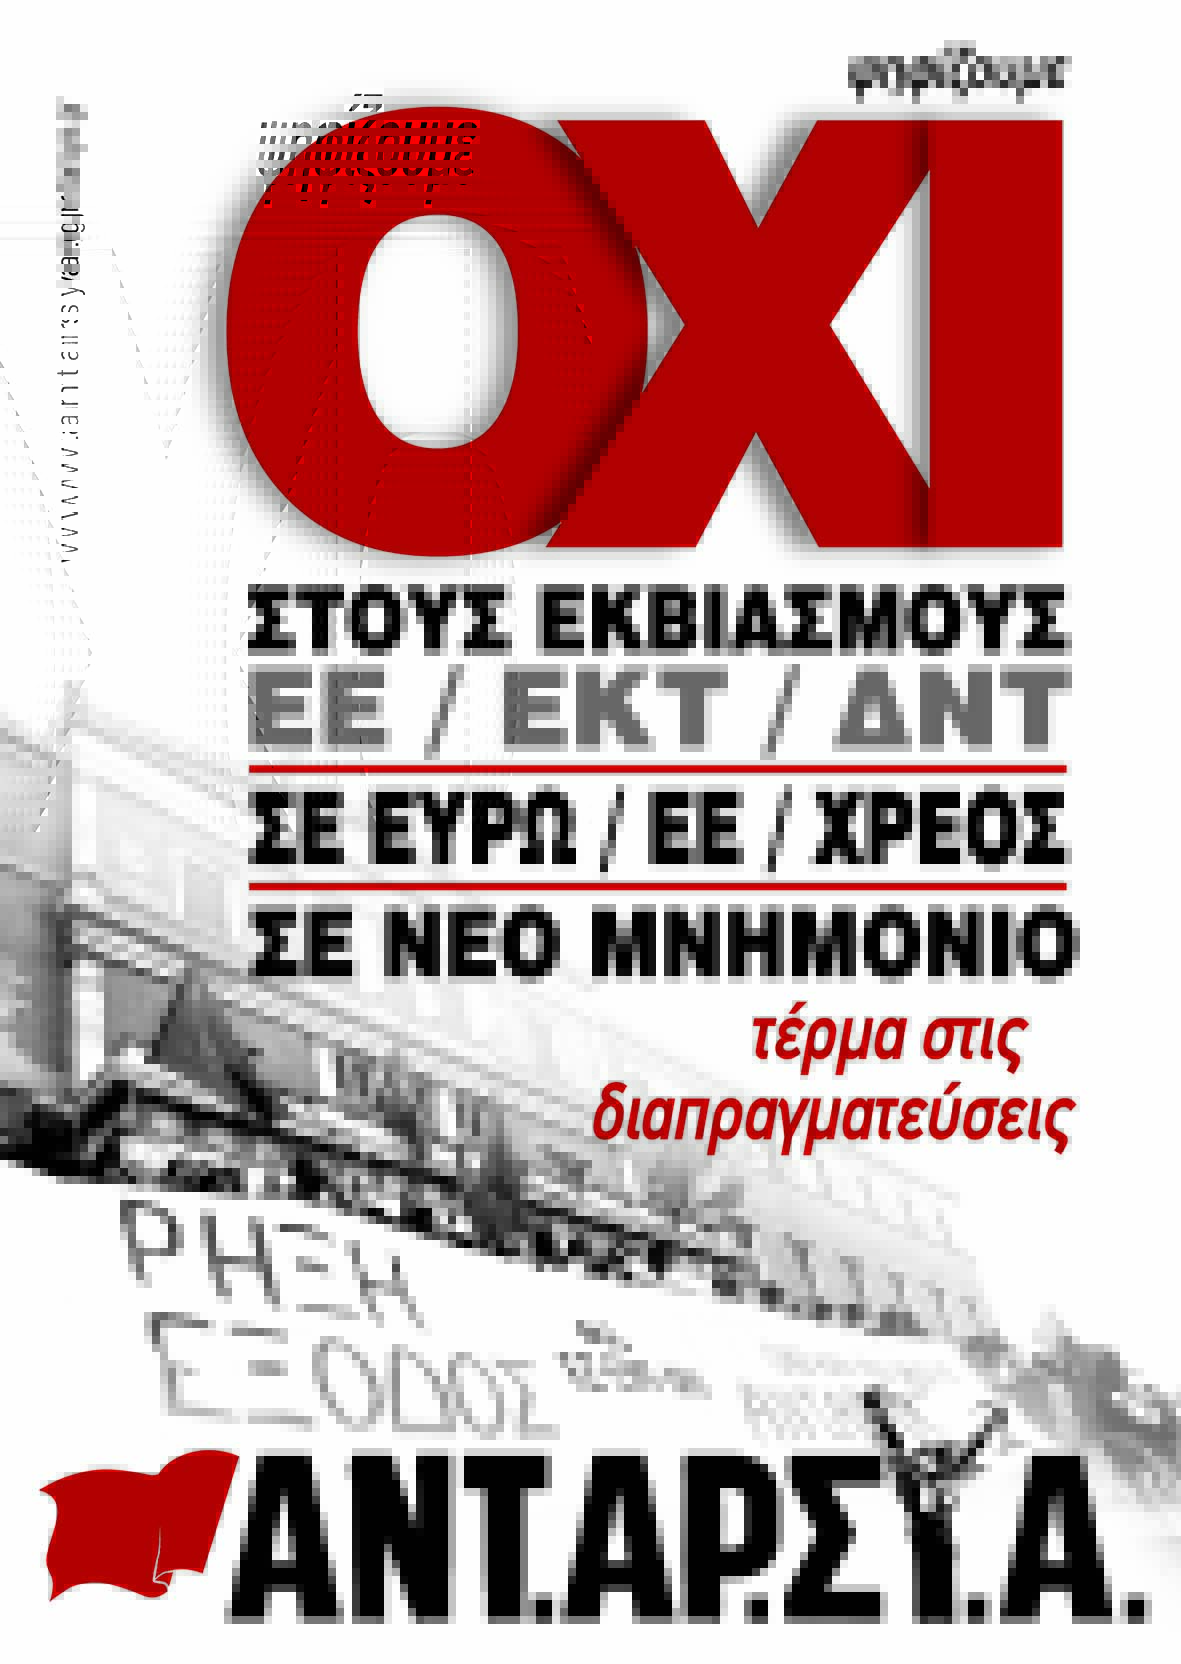 Αφίσα ΑΝΤΑΡΣΥΑ για το ΟΧΙ στο Δημοψήφισμα της 05/07/2015